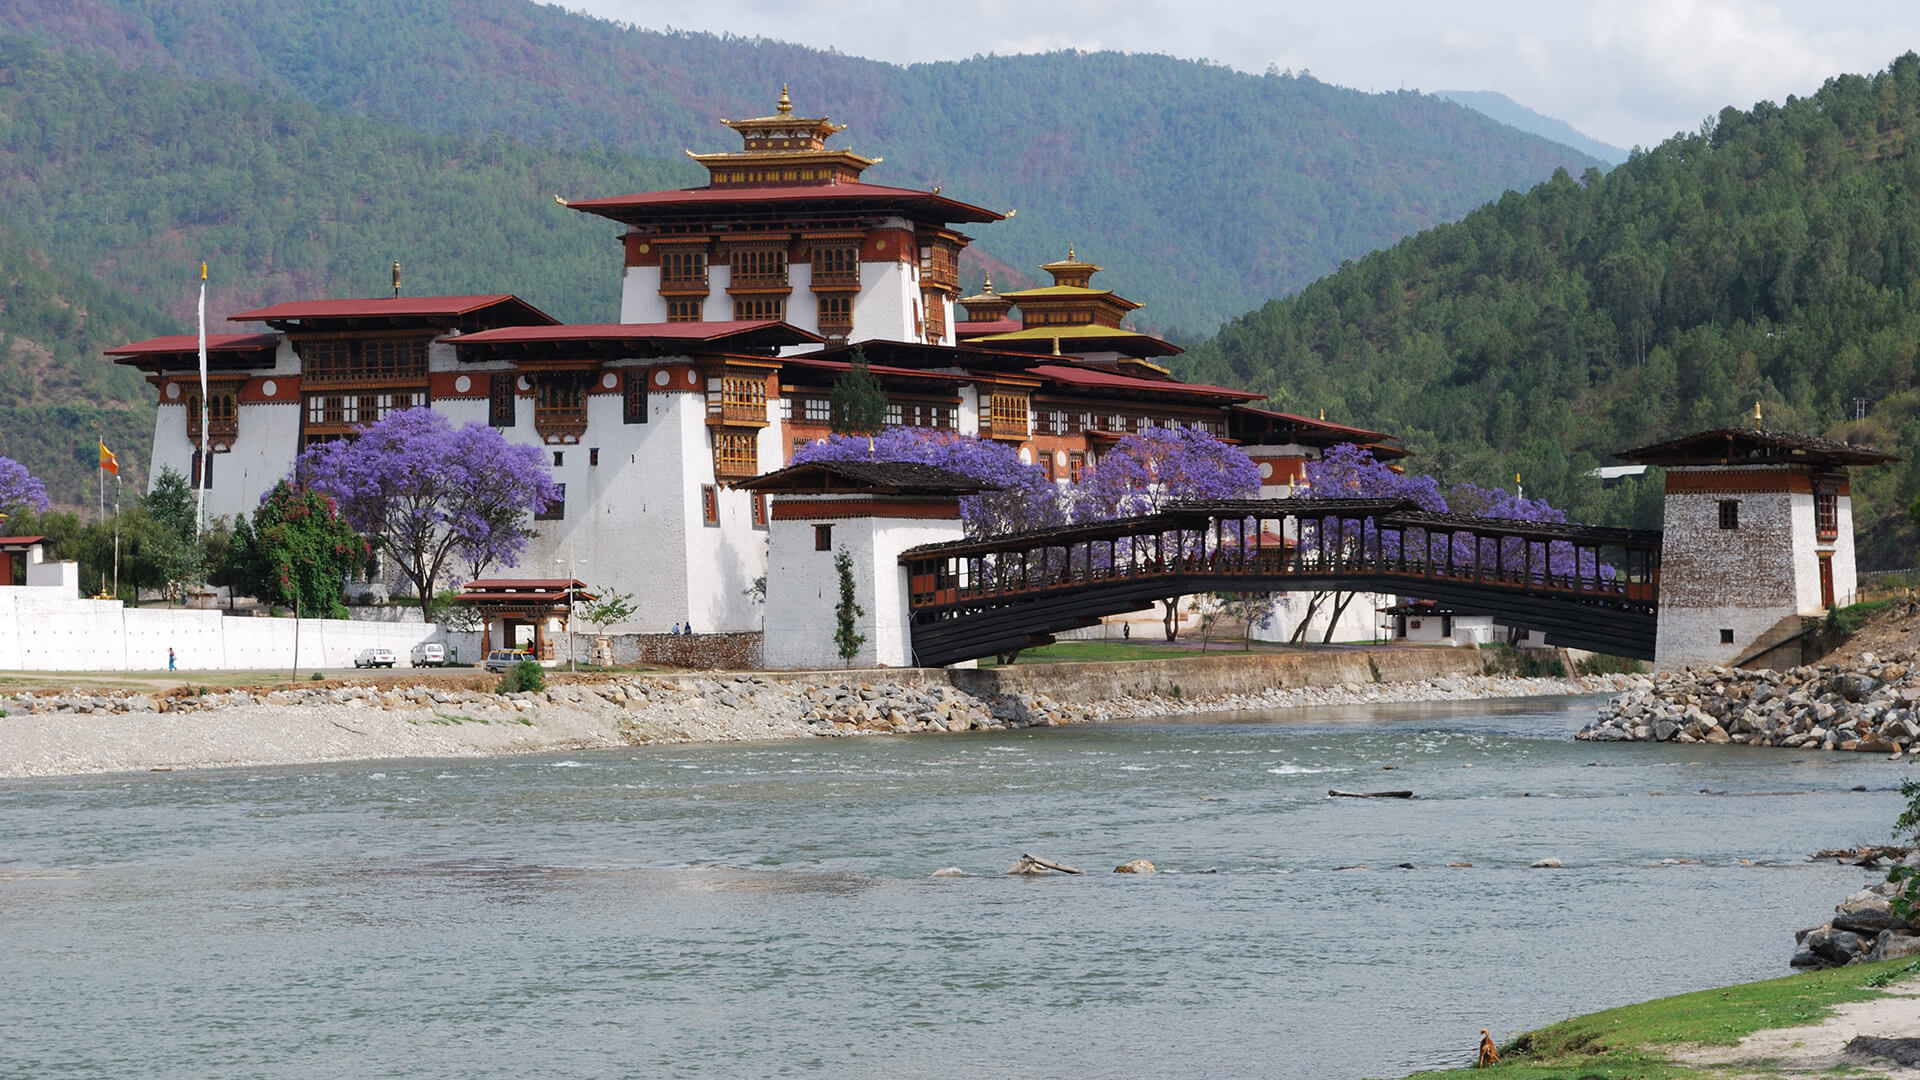 Tours in Bhutan